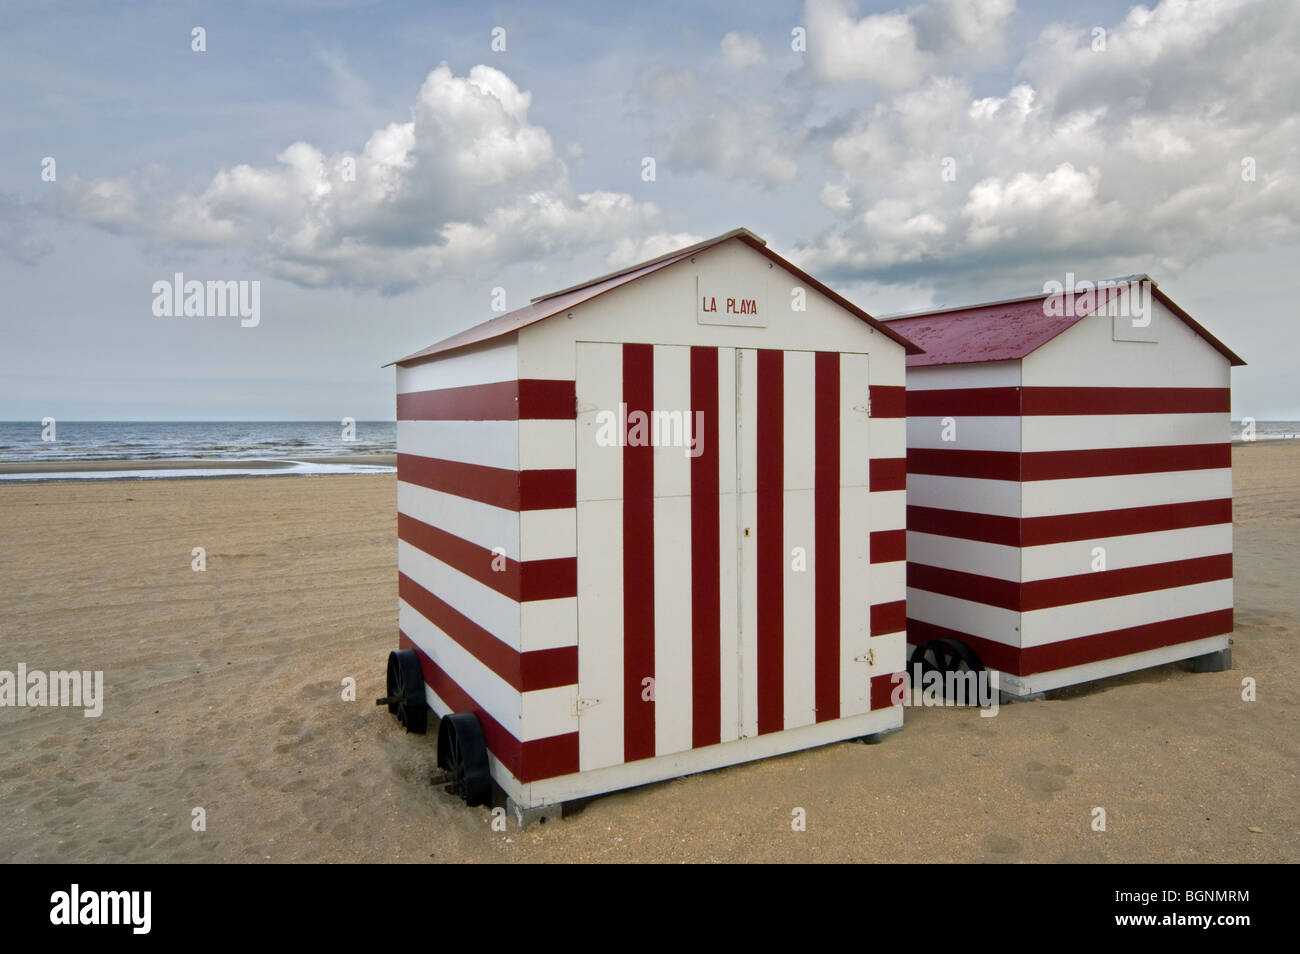 Fila de color rojizo con rayas blancas sobre ruedas cabañas de playa en la costa del Mar del Norte en De Panne, Bélgica Foto de stock